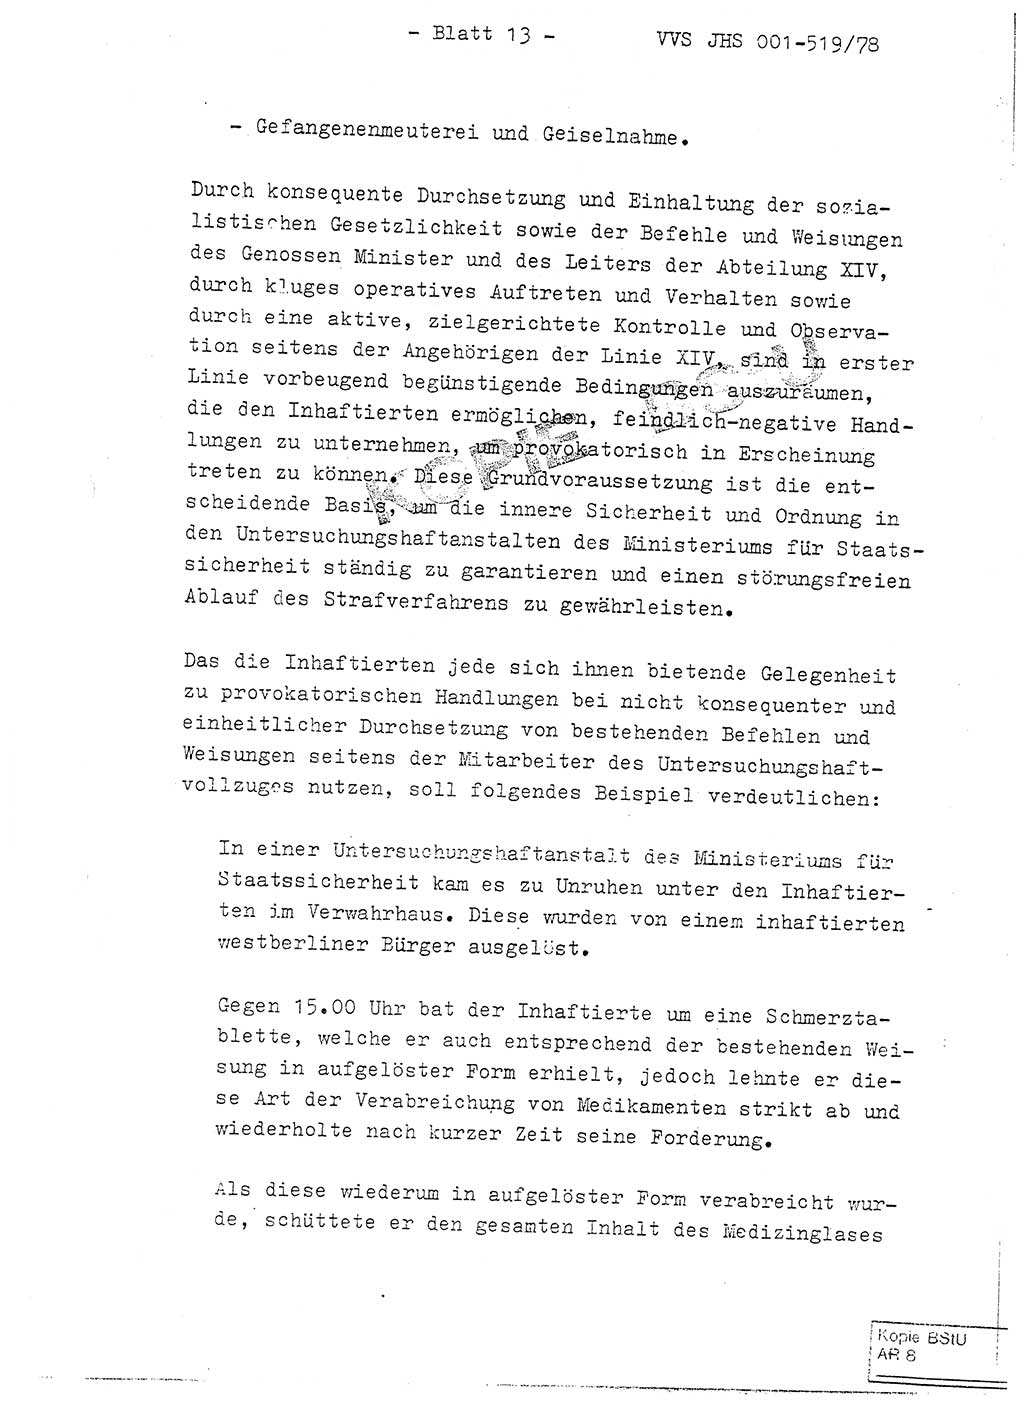 Fachschulabschlußarbeit Hauptmann Alfons Lützelberger (Abt. ⅩⅣ), Ministerium für Staatssicherheit (MfS) [Deutsche Demokratische Republik (DDR)], Juristische Hochschule (JHS), Vertrauliche Verschlußsache (VVS) 001-519/78, Potsdam 1978, Blatt 13 (FS-Abschl.-Arb. MfS DDR JHS VVS 001-519/78 1978, Bl. 13)